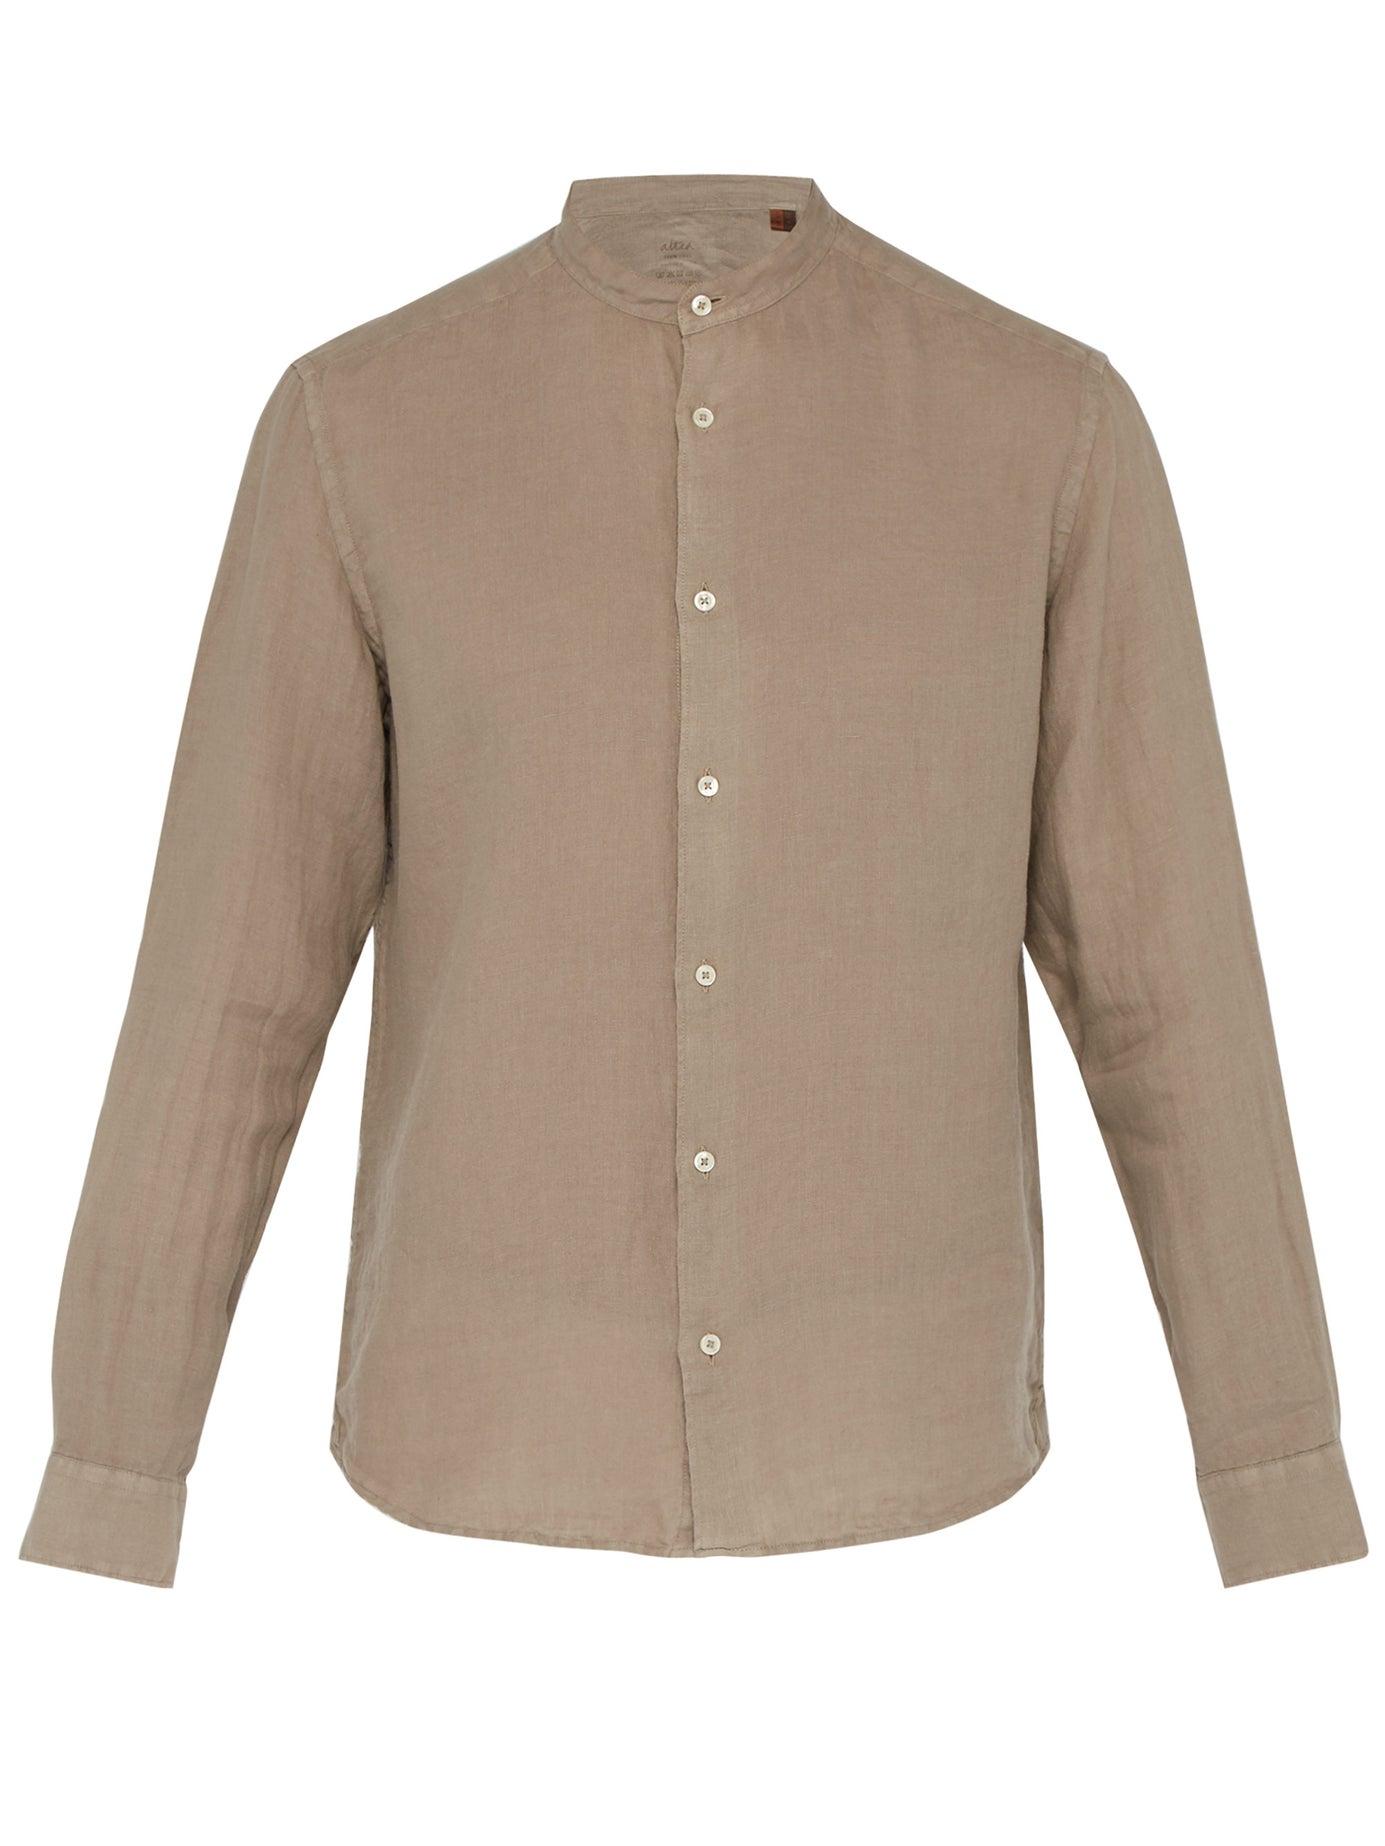 Altea Band-collar Linen Shirt in Light Brown (Brown) for Men - Lyst